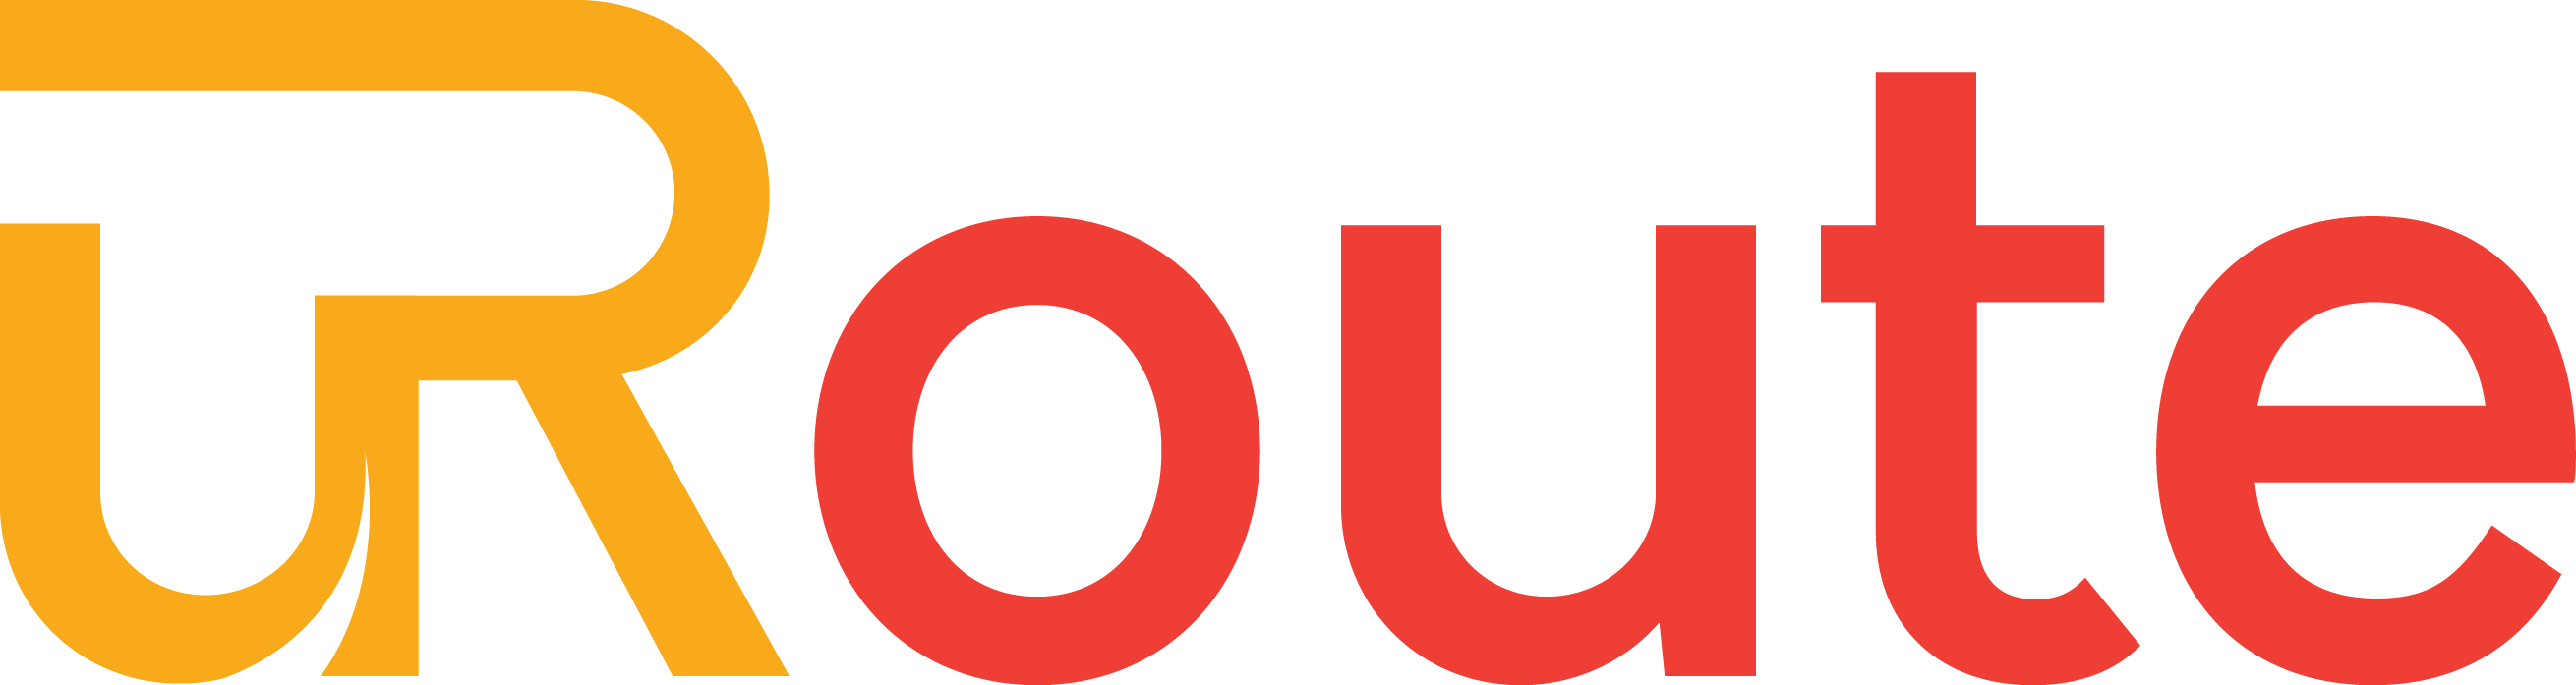 uRoute Logo